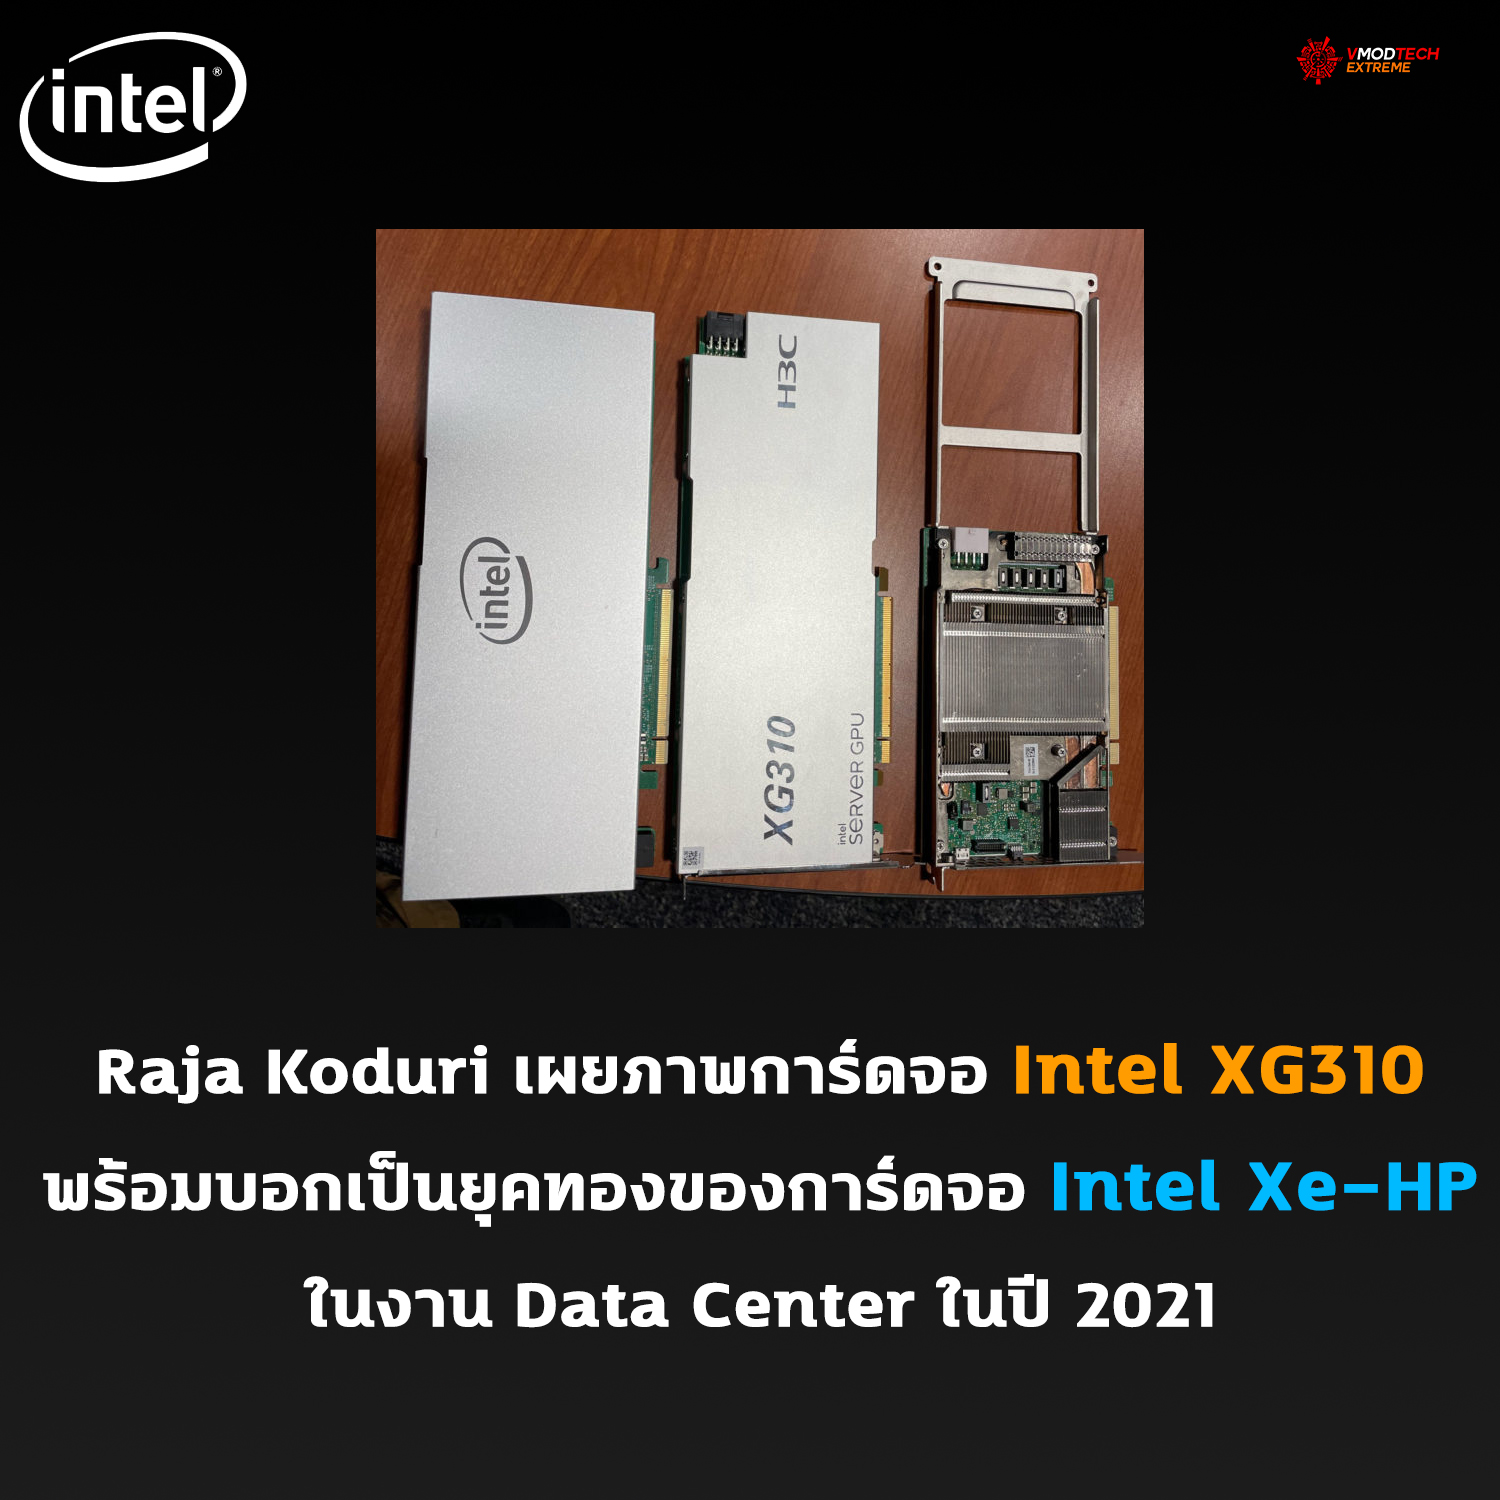 intel xg310 Raja Koduri เผยภาพการ์ดจอ Intel XG310 พร้อมบอกเป็นยุคทองของการ์ดจอ Intel Xe HP ในงาน Data Center ในปี 2021 